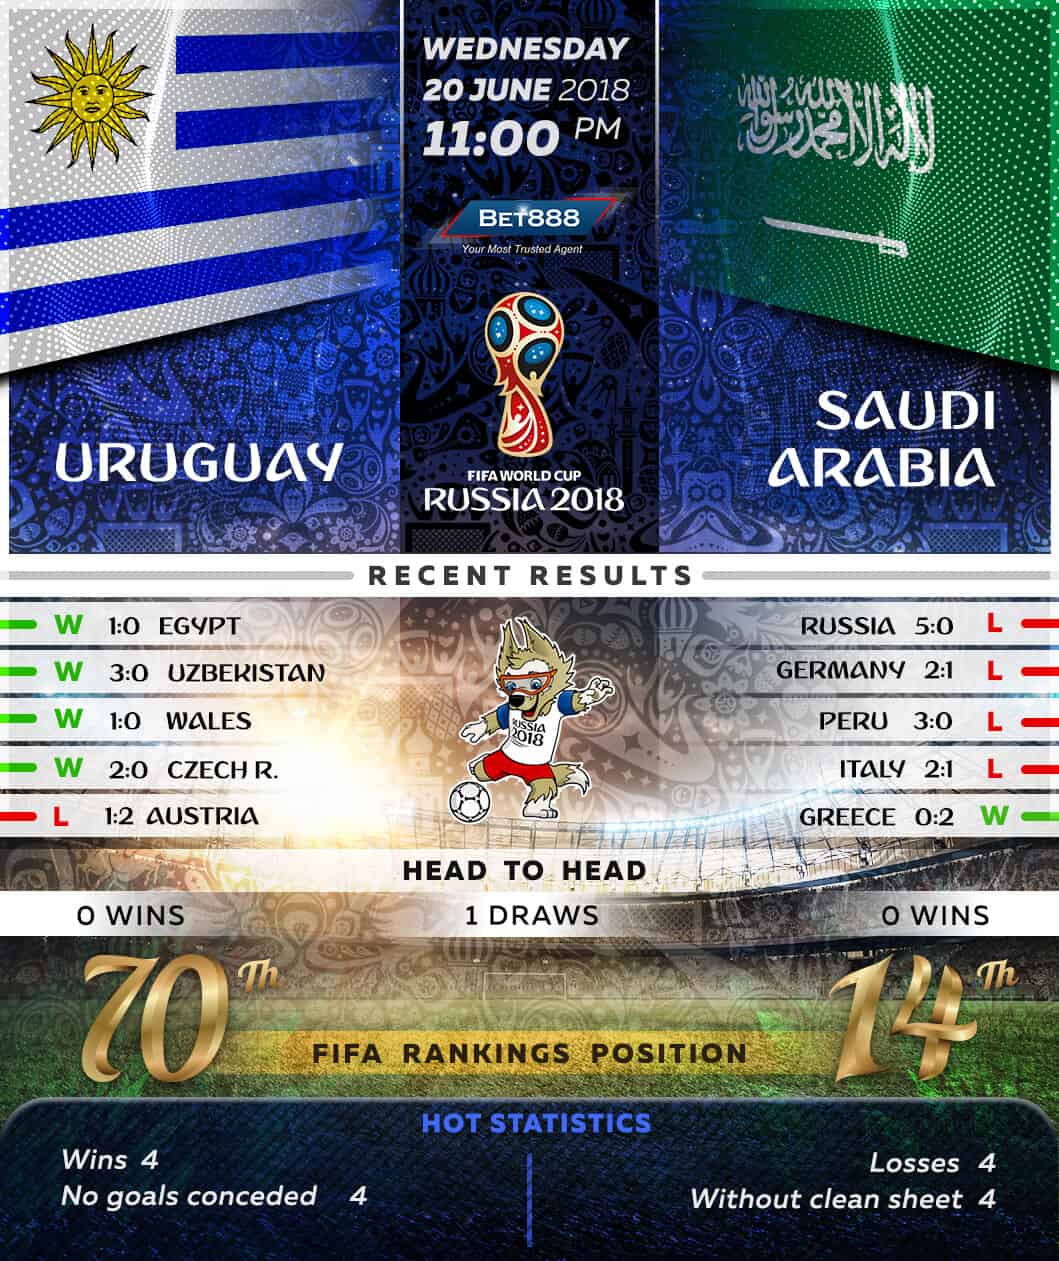 Uruguay vs Saudi Arabia 20/06/18